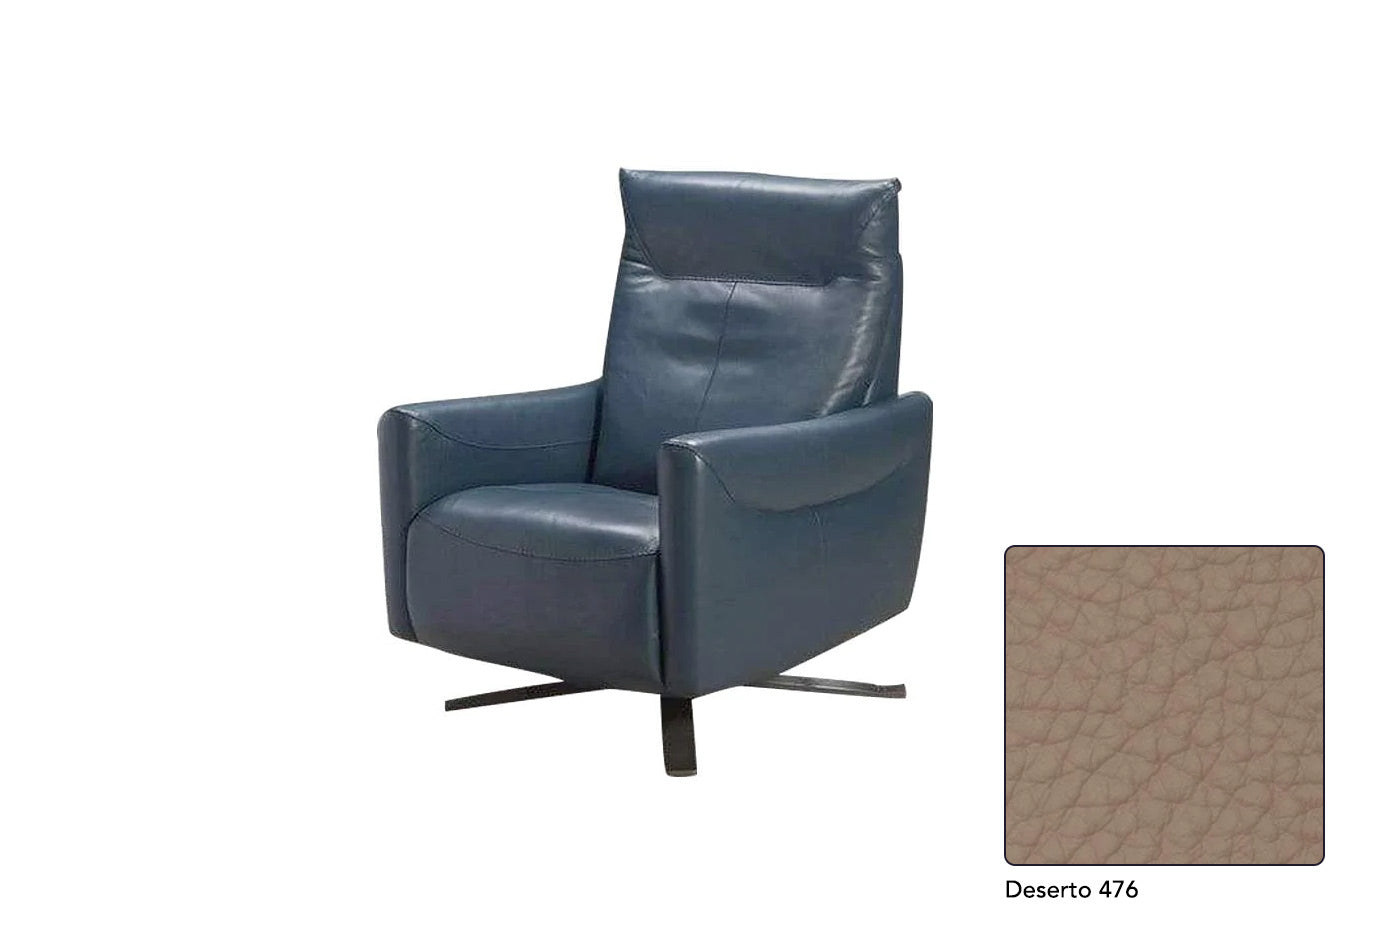 Reiwa Reclining Chair | J&M Furniture